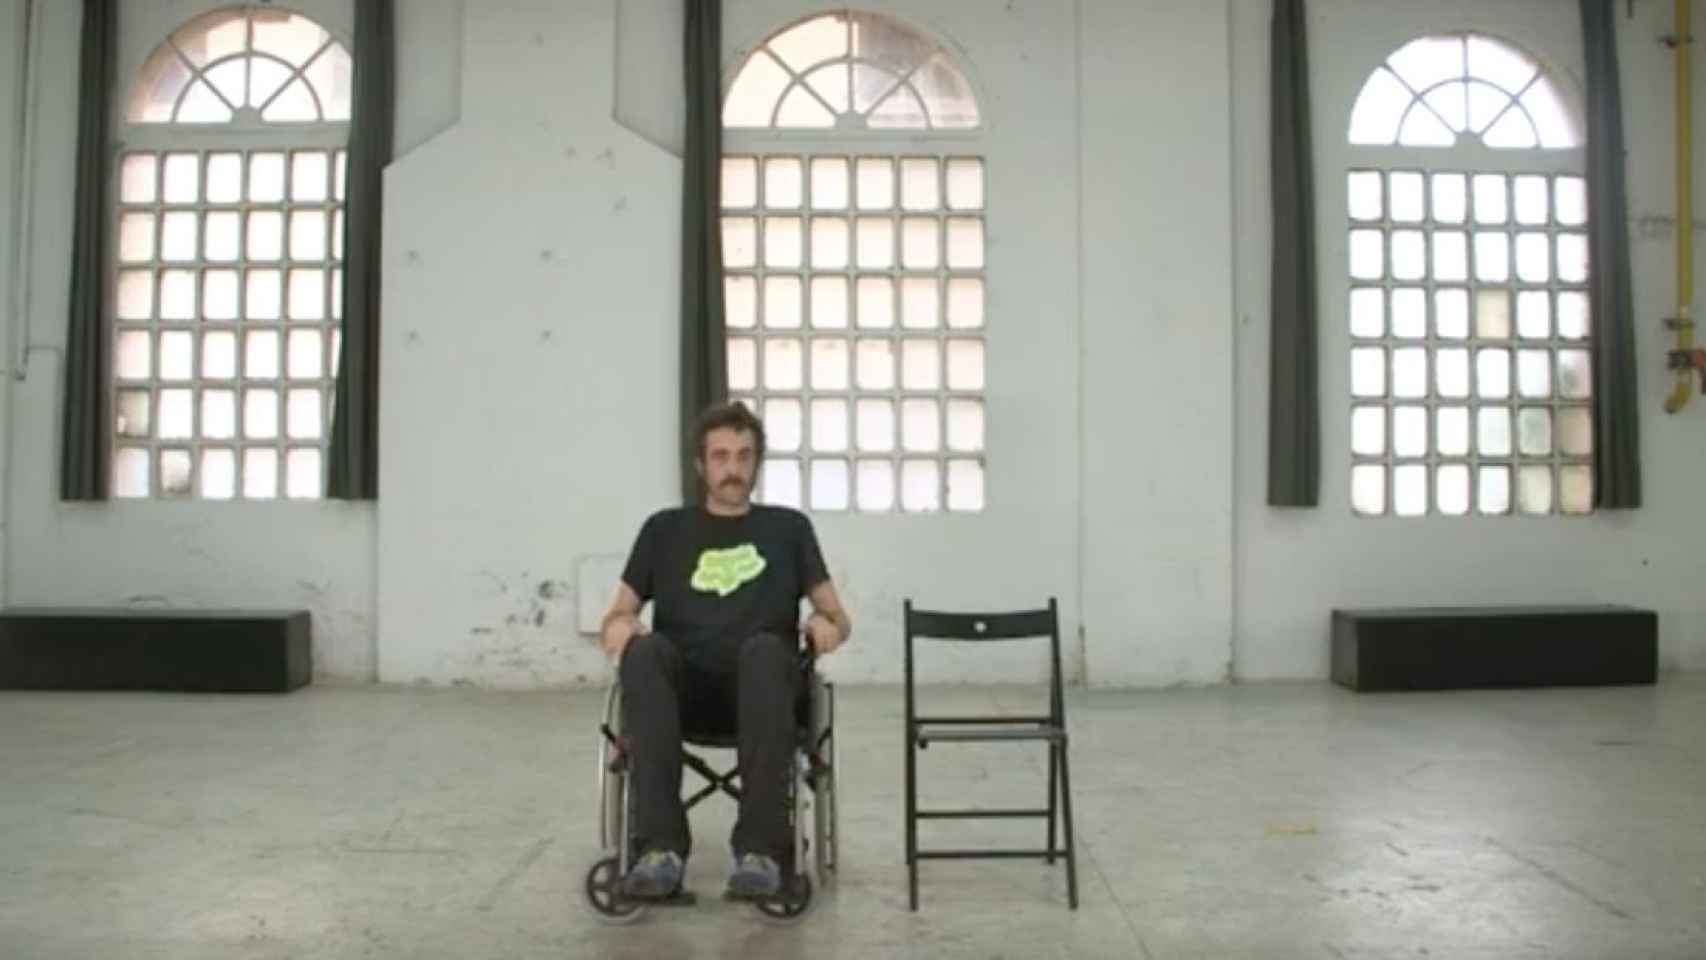 Fotograma del documental 'Distàncies', que retrata la realidad de personas con discapacidad.